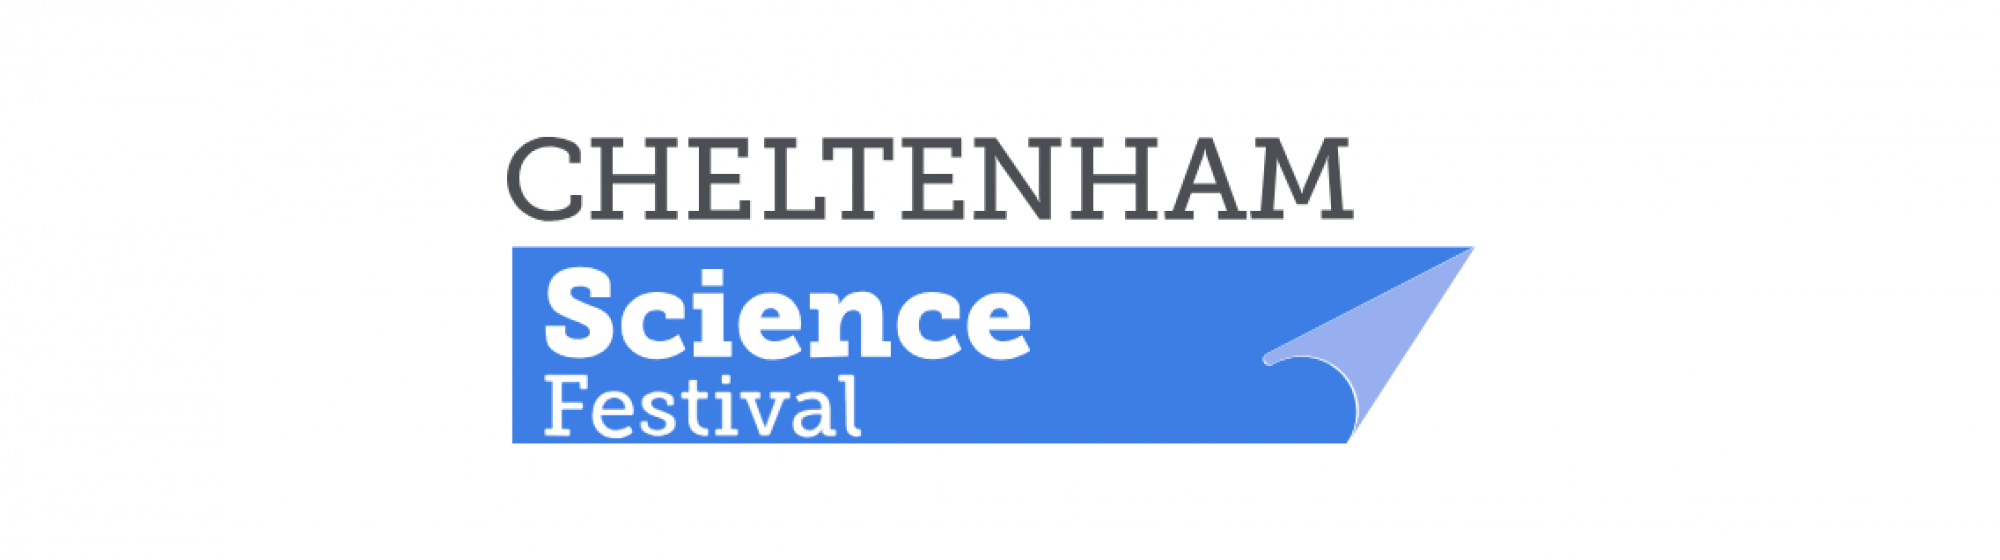 Cheltenham Science Festival